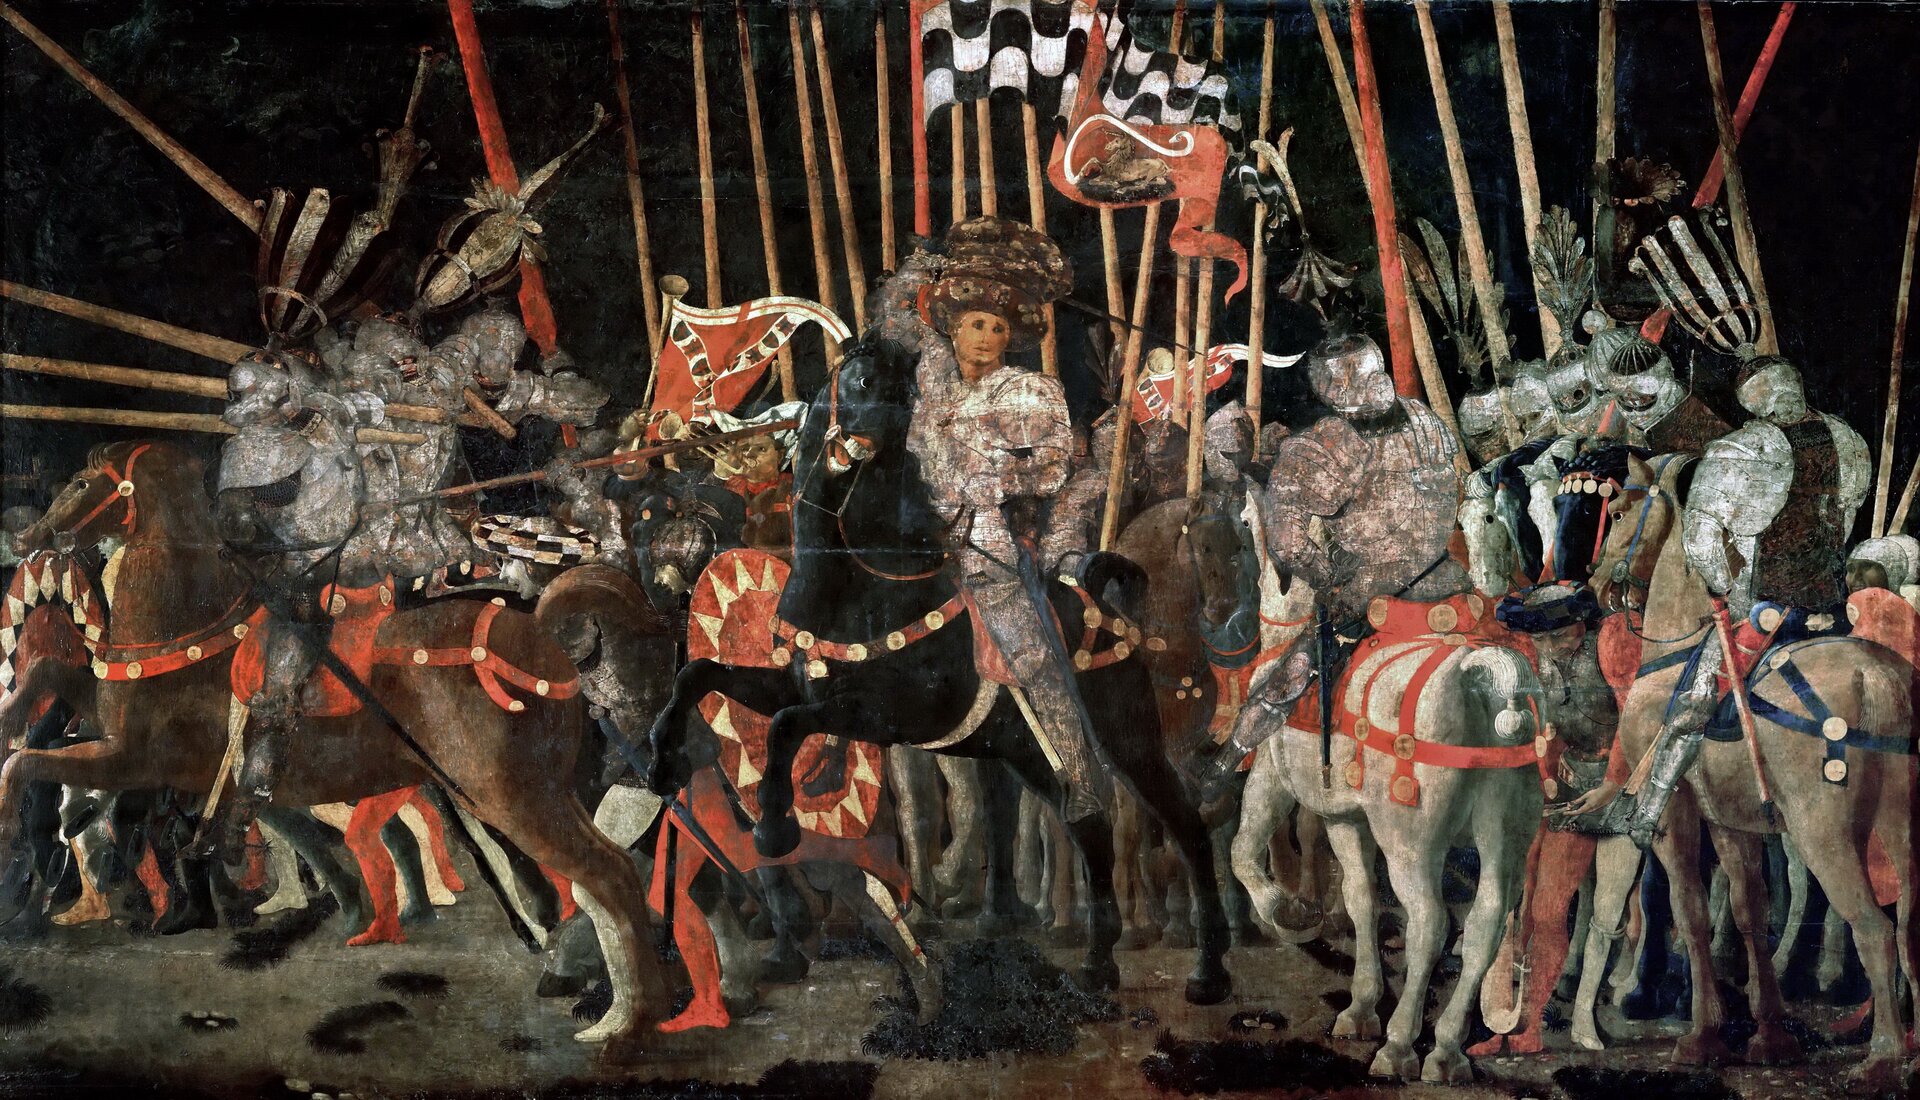 Ilustracja przedstawia obraz Paolo Uccello pt. „Bitwa pod San Romano (III)”. Na obrazie znajduje się tłum ludzi podczas bitwy. Bohaterowie znajdują się na koniach. W dłoniach trzymają miecze oraz flagi. Ubrani są w zbroje oraz na głowach mają hełmy. Konie także mają założone zbroje. Postacie na koniach ustawione są w jednym rzędzie - przodem do odbiorcy obrazu.